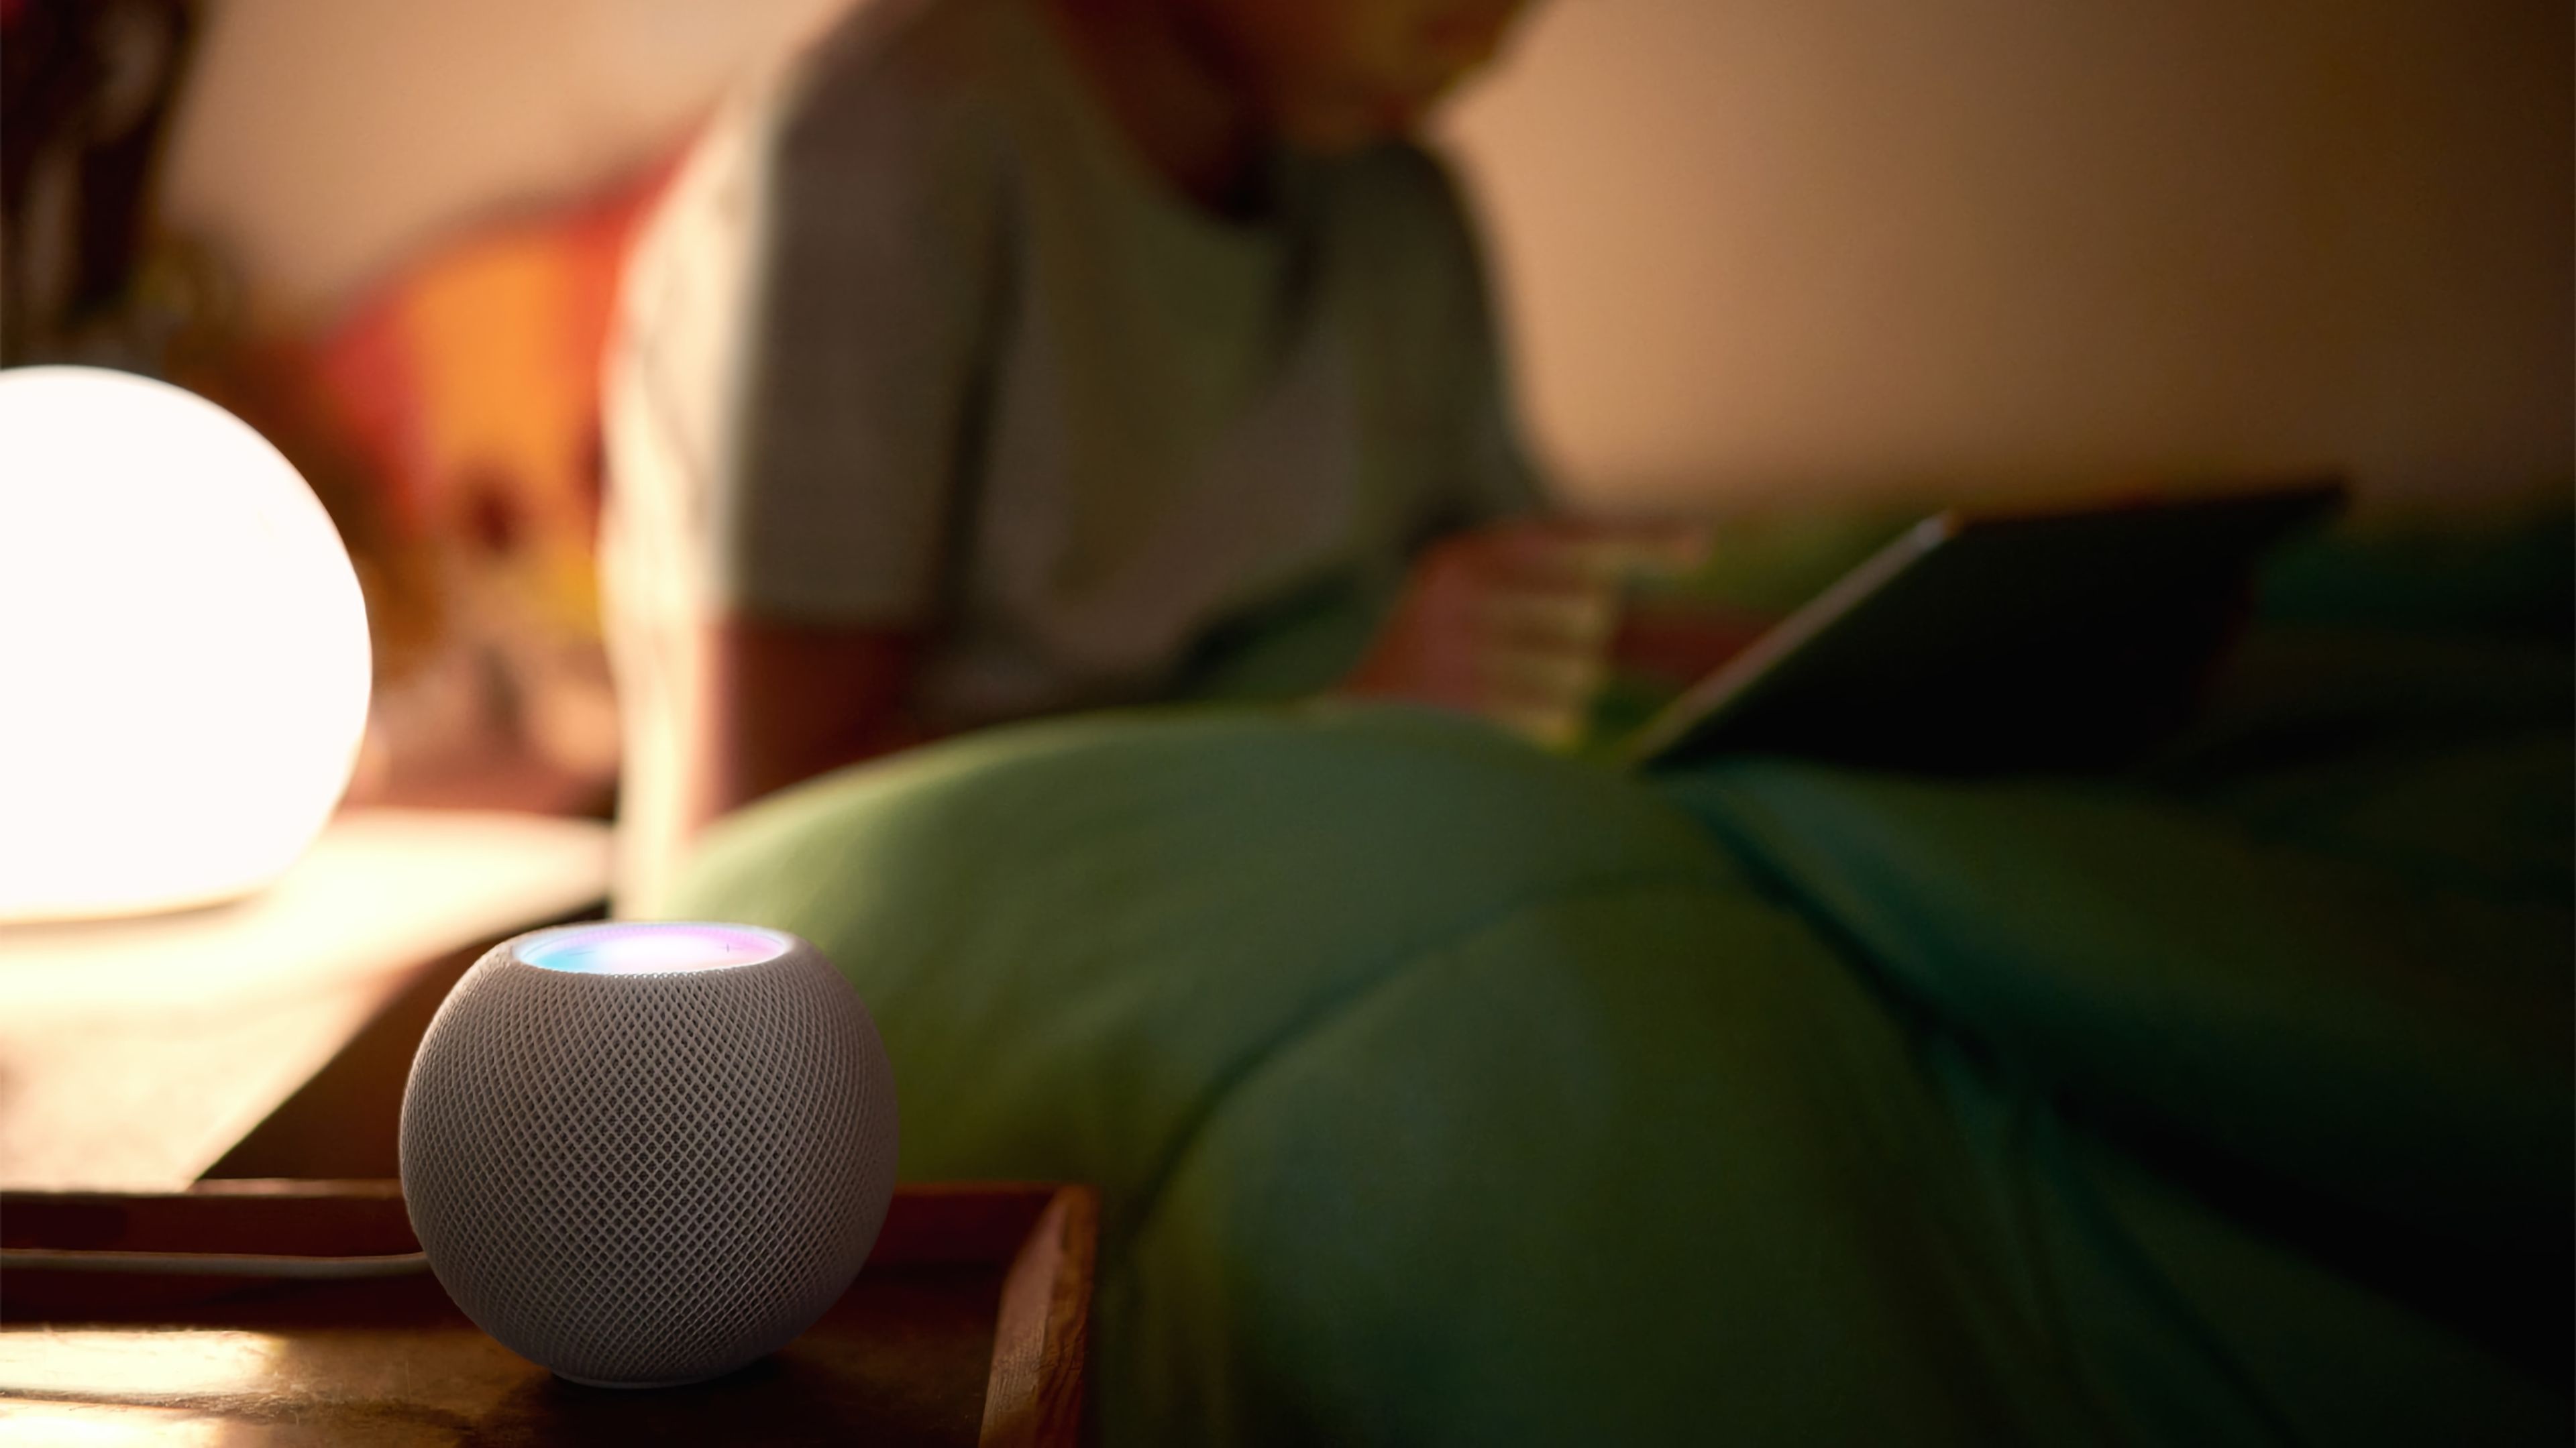 Review del  Echo Dot 5: el mejor altavoz inteligente barato